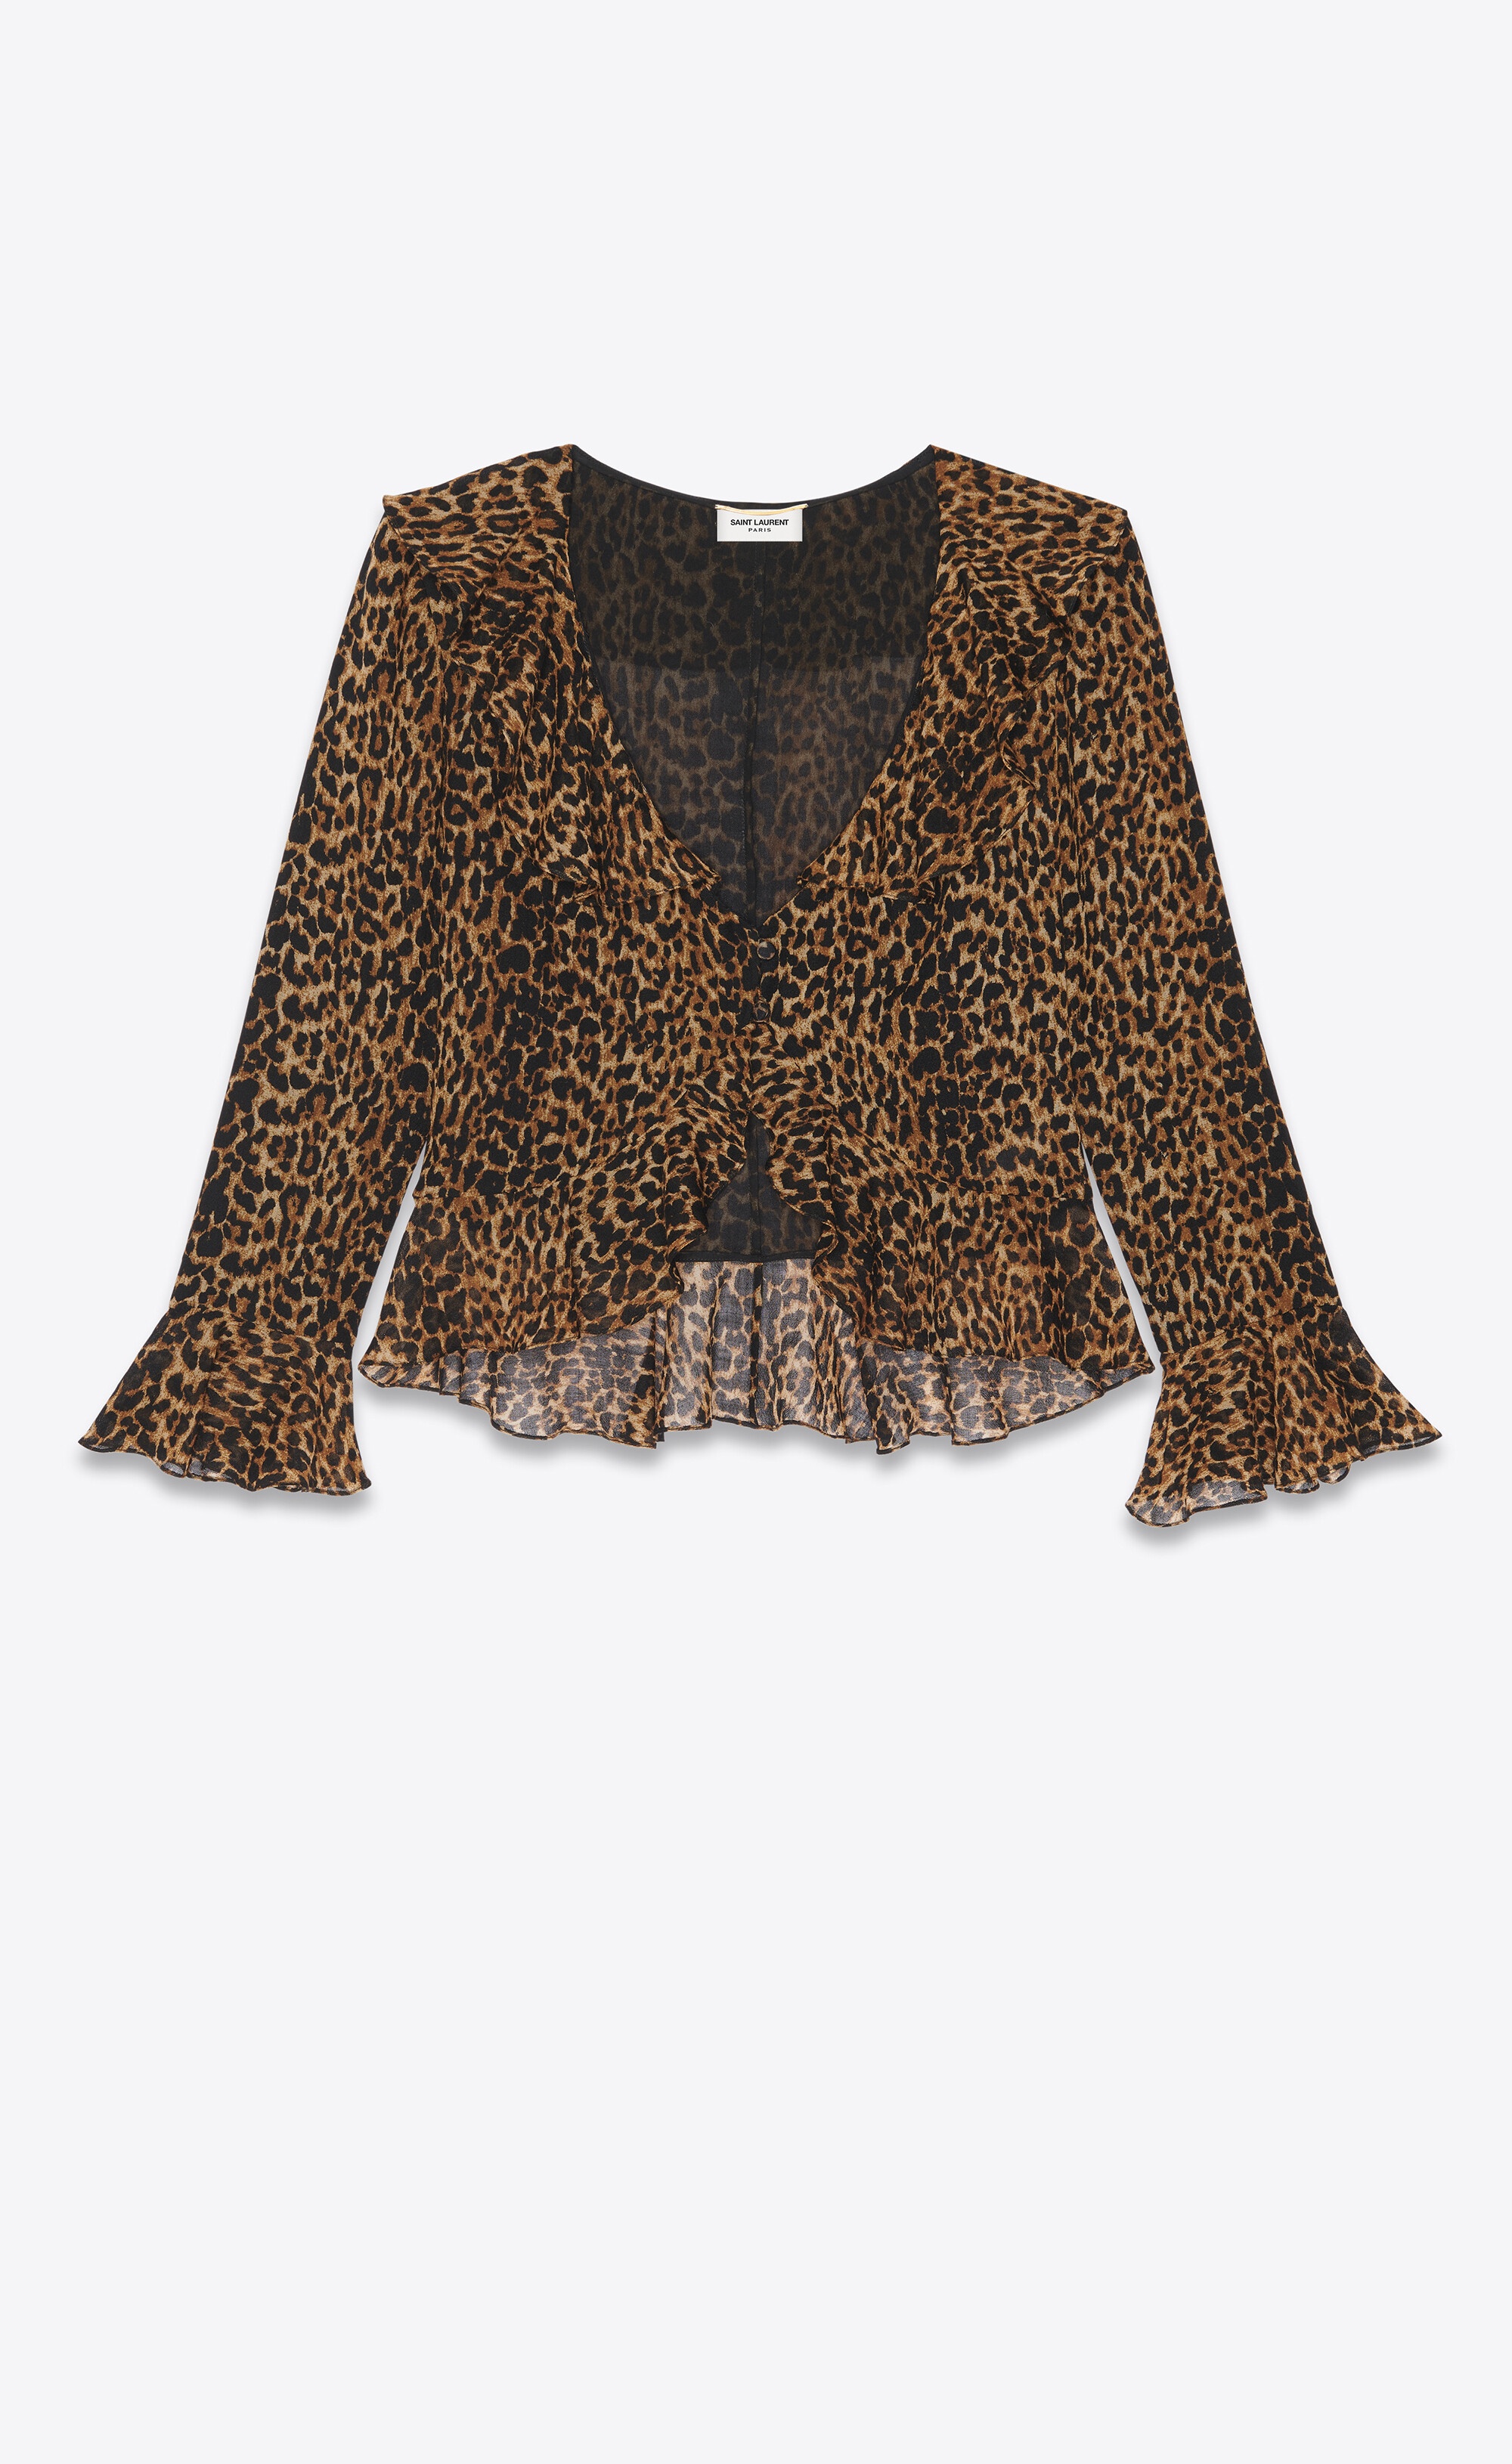 ruffled blouse in leopard-print wool - 1